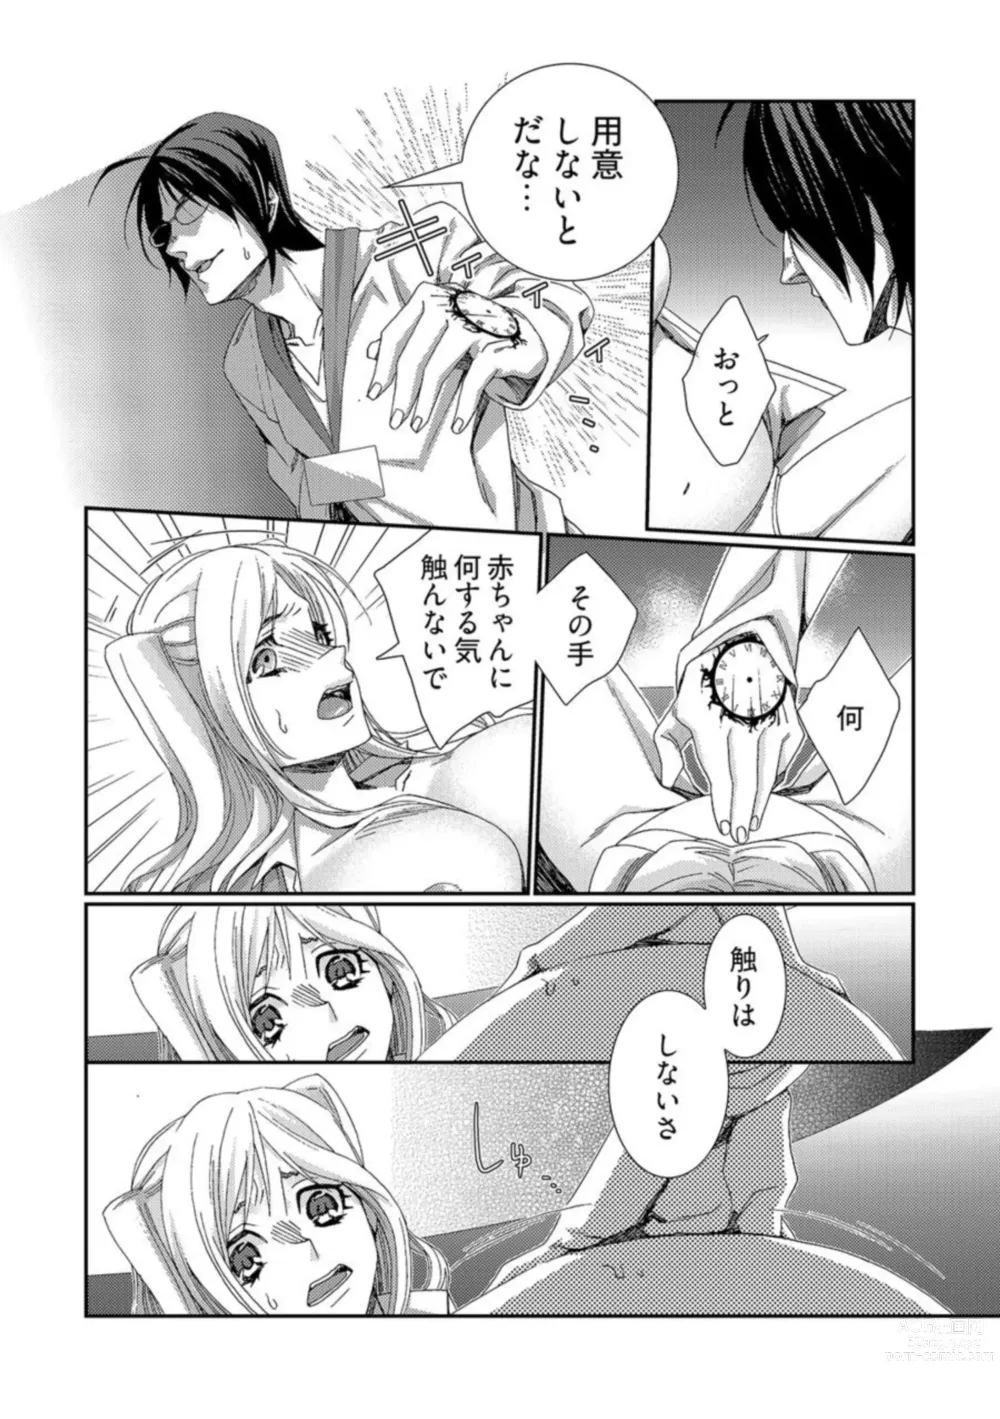 Page 14 of manga Jikan o Ayatsuri Mukyoka Tanetsuke - Shojo kara Ninshin made Mugen Loop Vol. 2